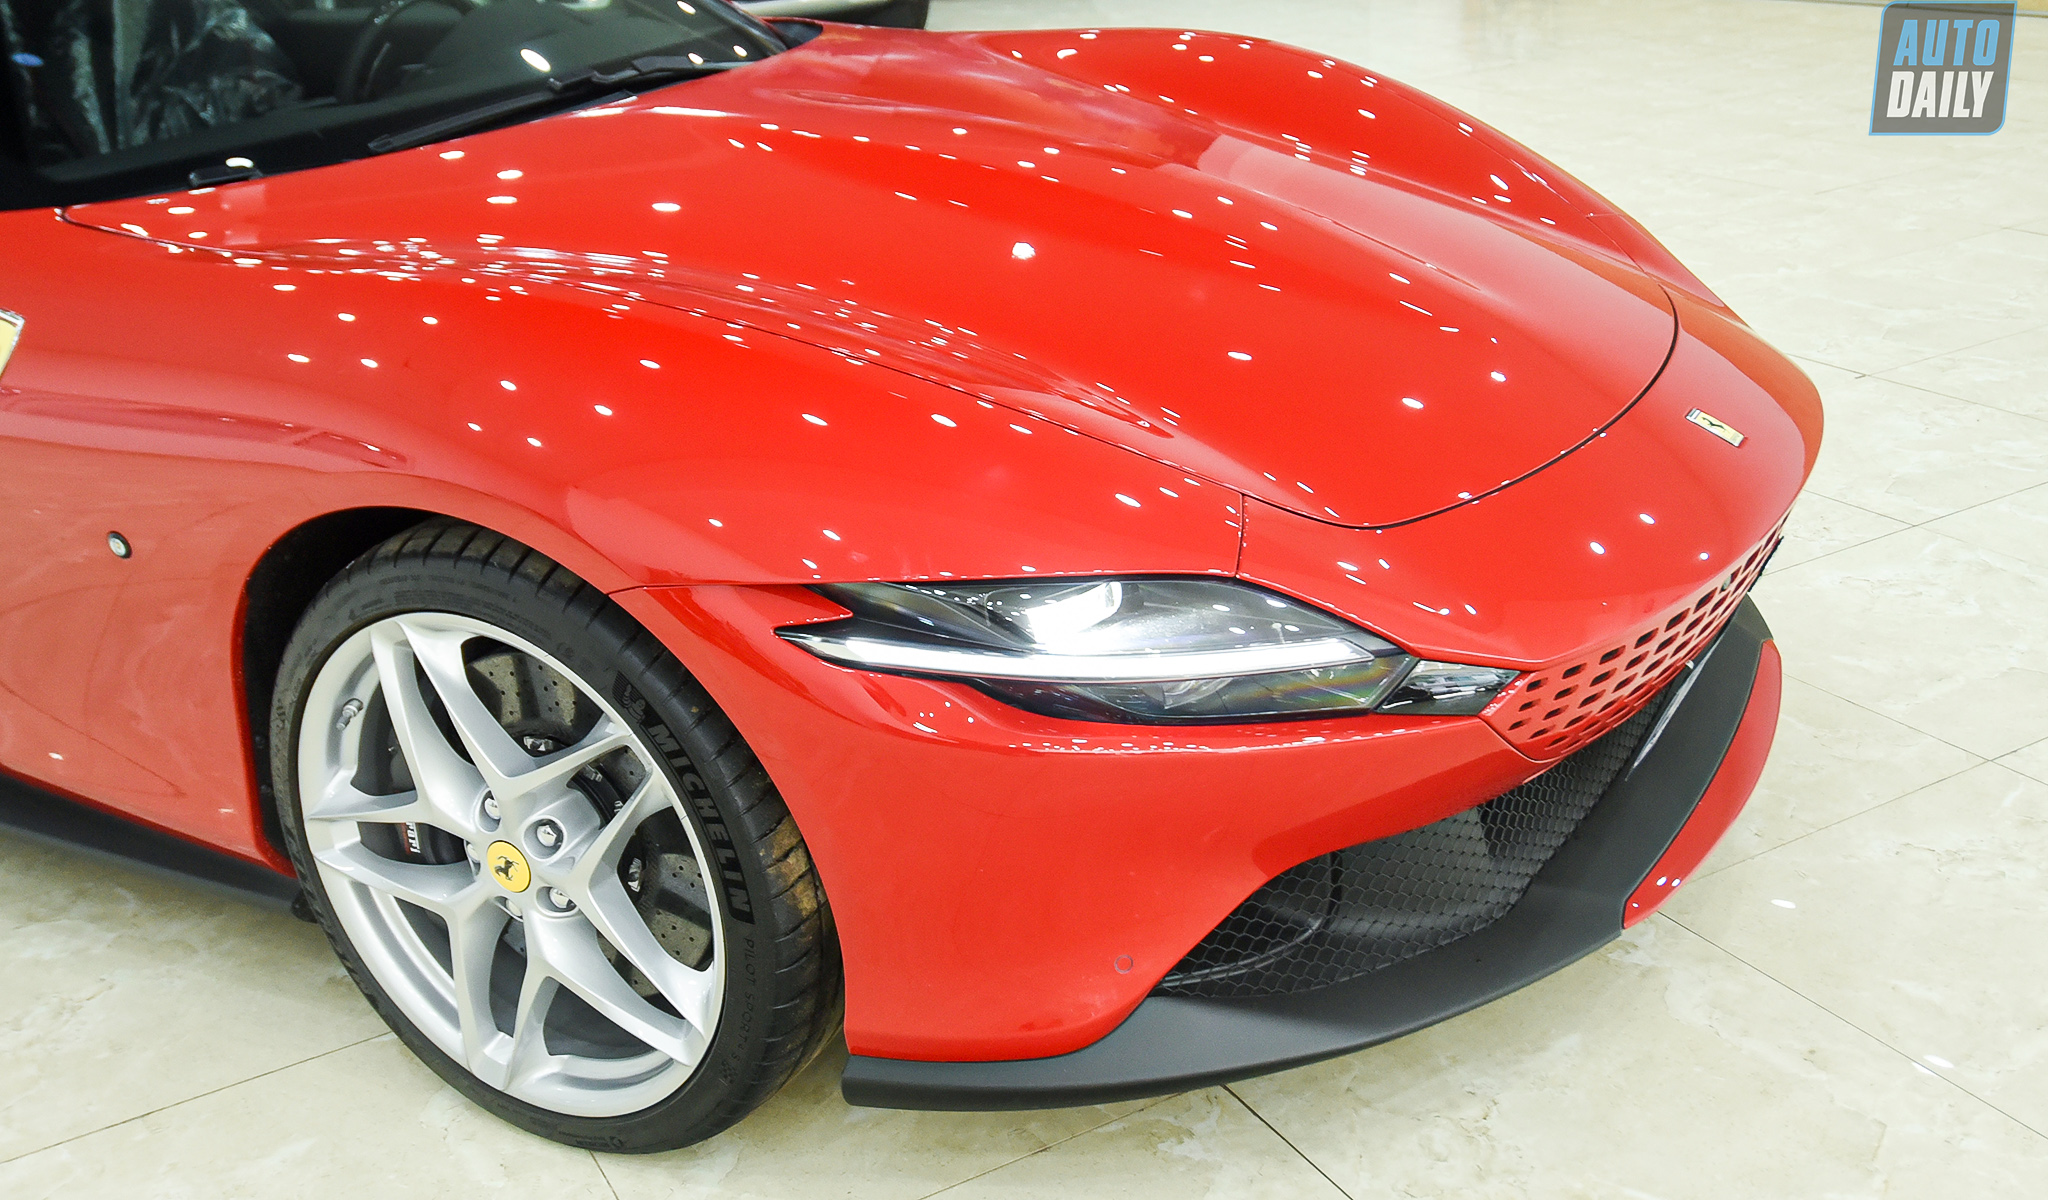 Chi tiết Ferrari Roma thứ 2 về Việt Nam, giá hơn 20 tỷ đồng ferrari-roma-autodaily-27.jpg